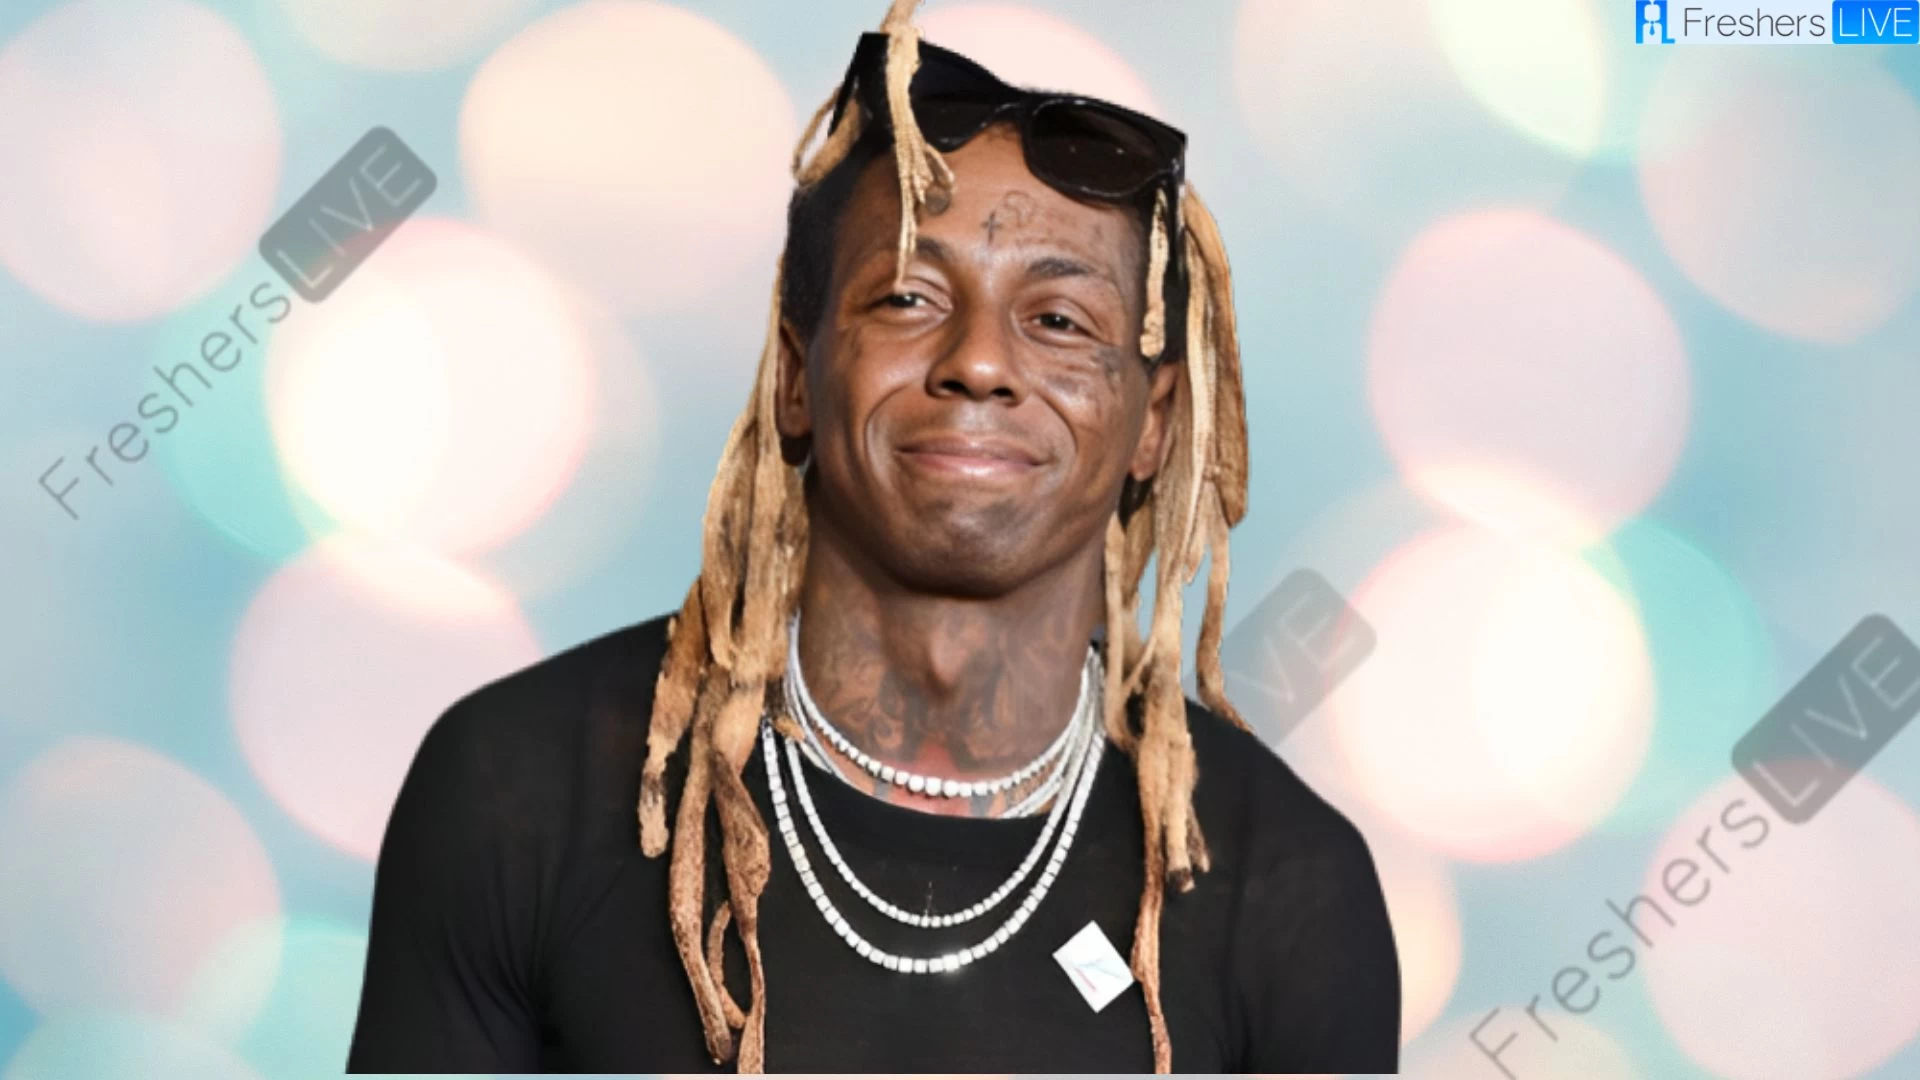 Etnia de Lil Wayne, ¿Cuál es la etnia de Lil Wayne?